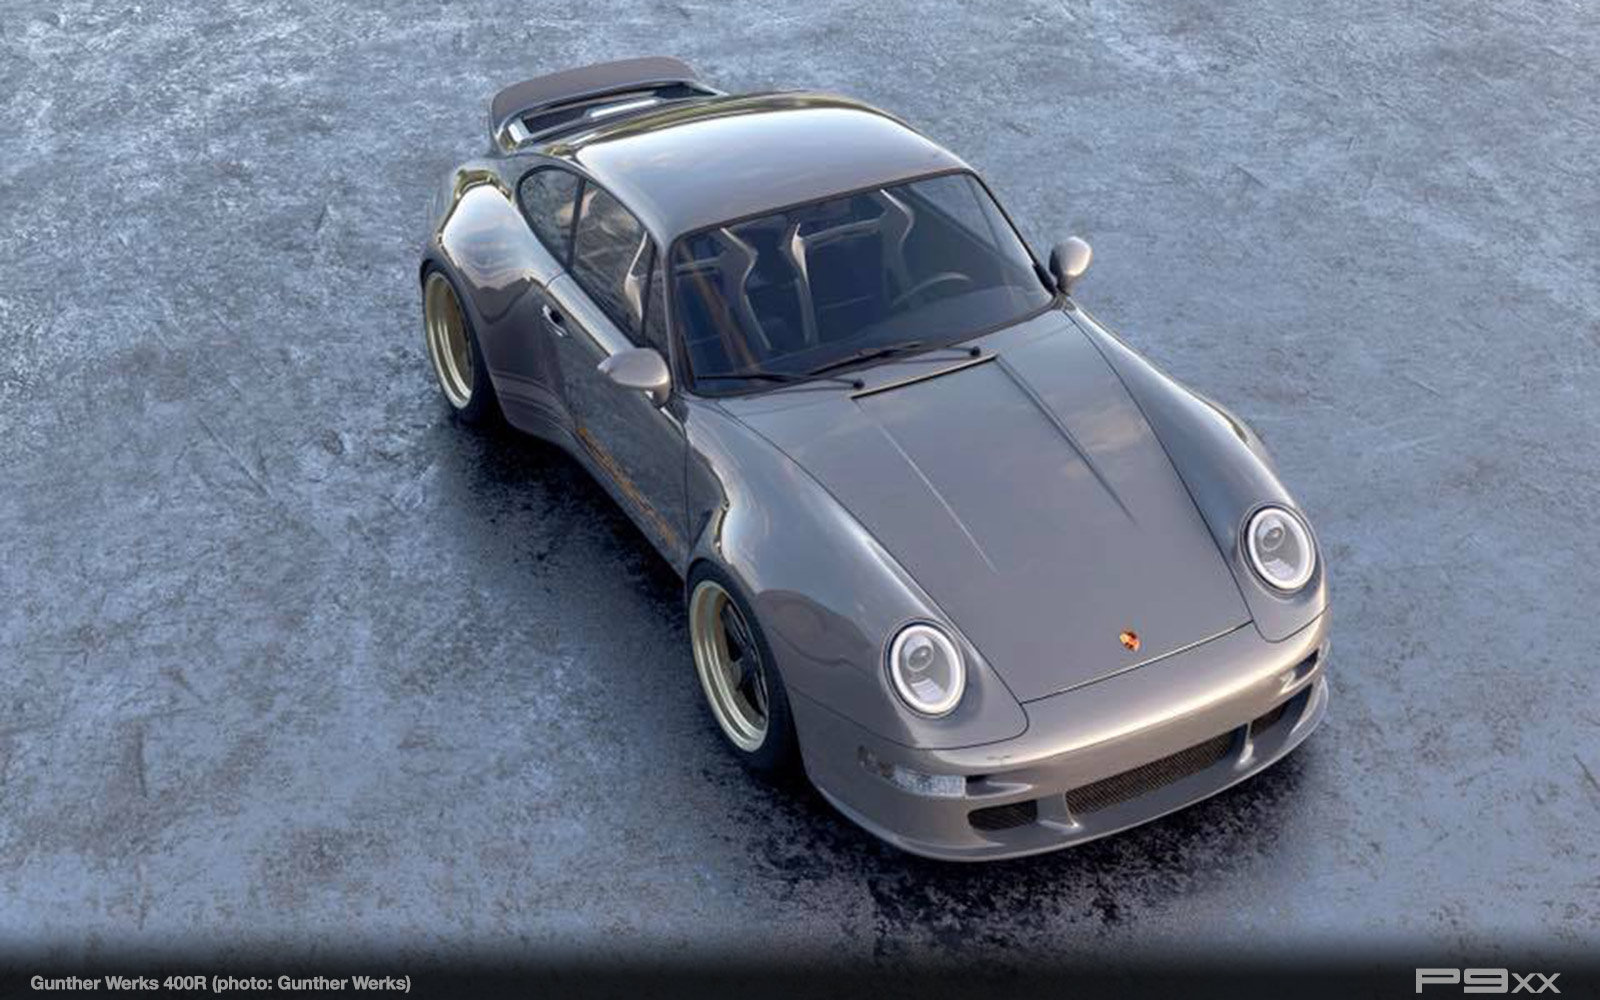 Gunther Werks Remastered 993 At Pebble Beach Rennlist Porsche